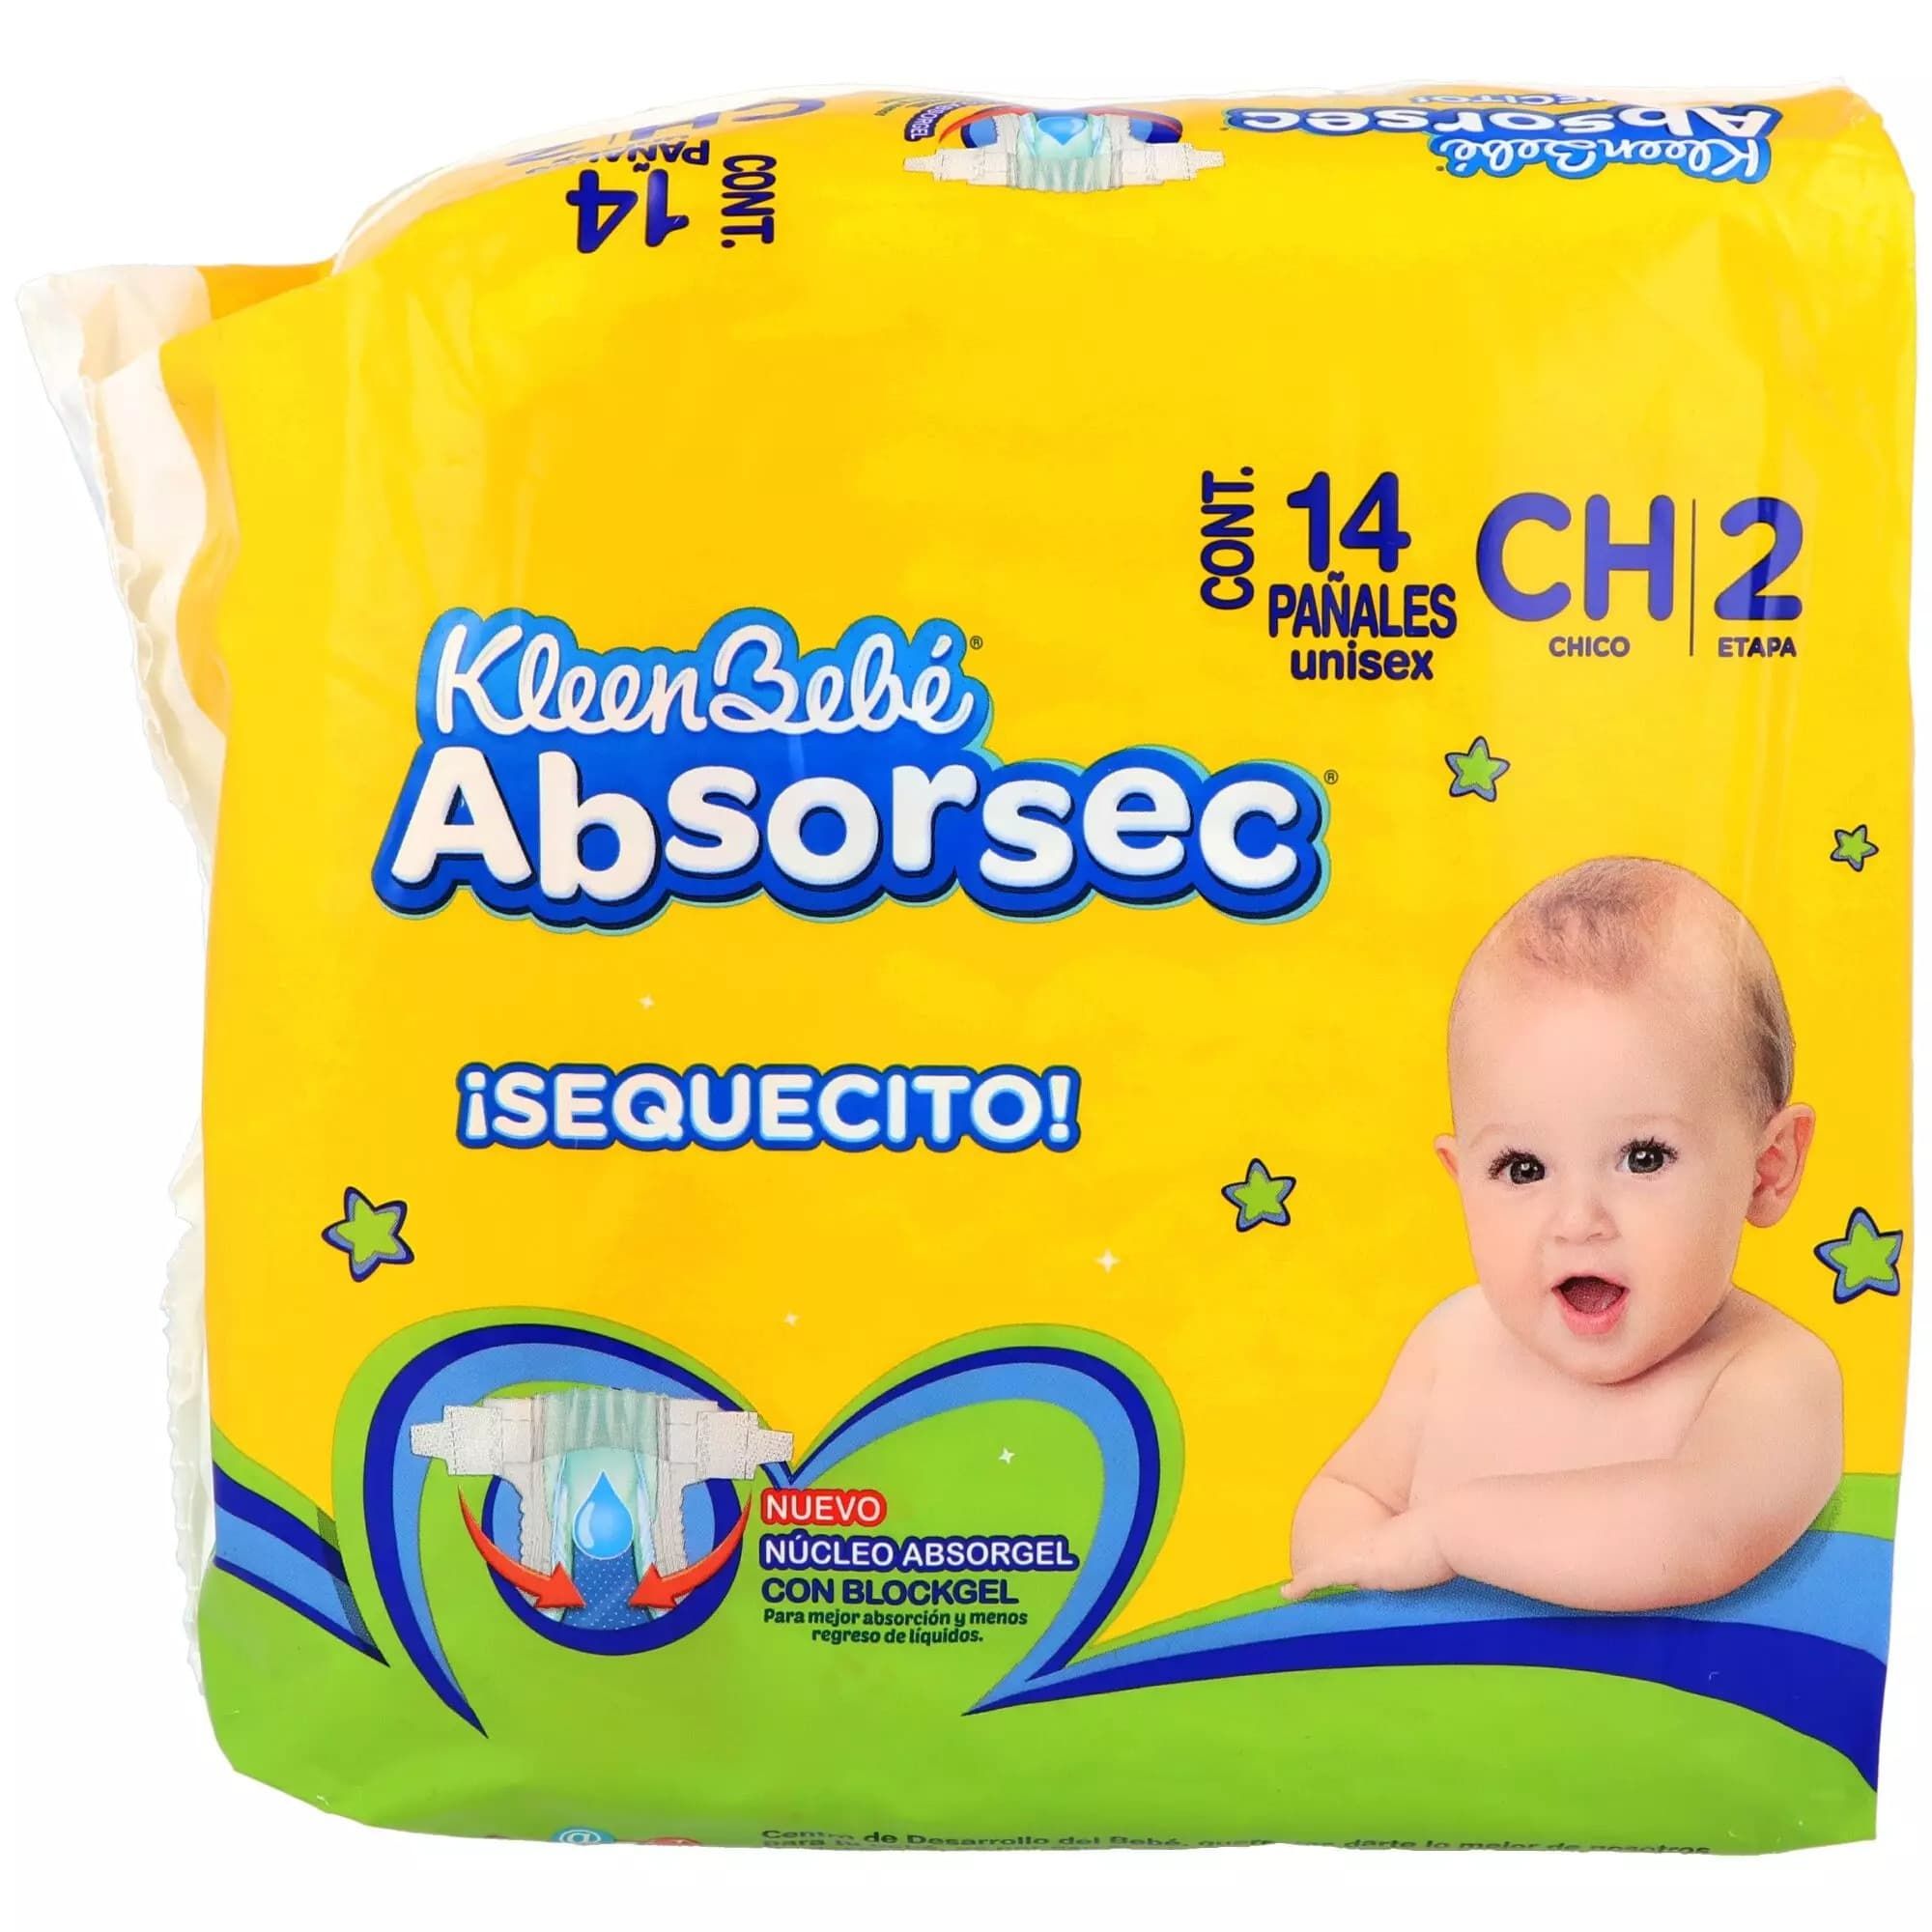 Precio Pañales Kbb absorsec Ch 14 piezas | Farmalisto MX